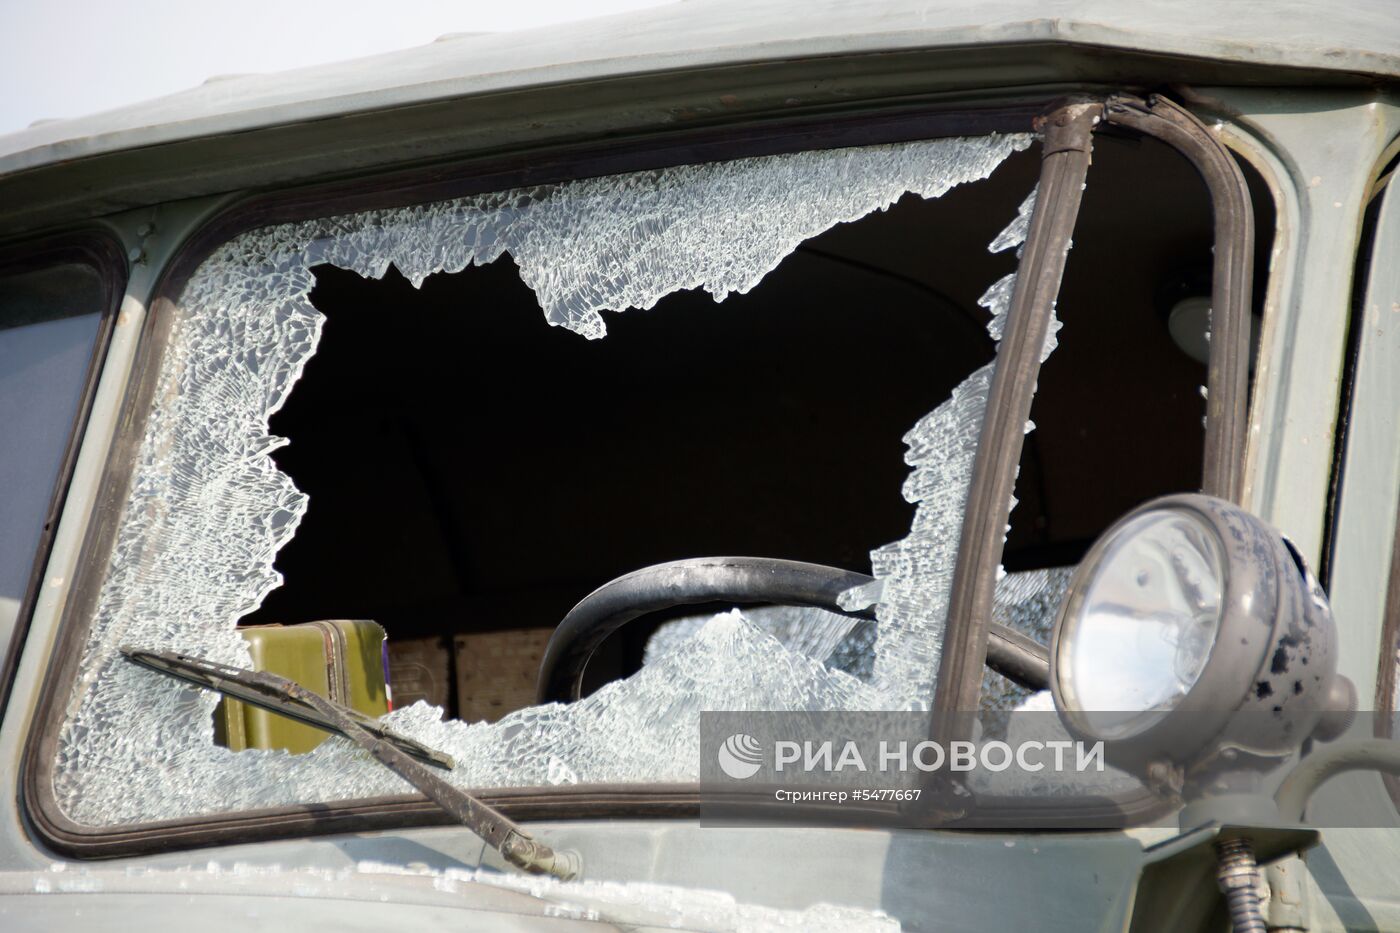 Последствия обстрела района в Луганске, где находилась техника для участия в параде Победы